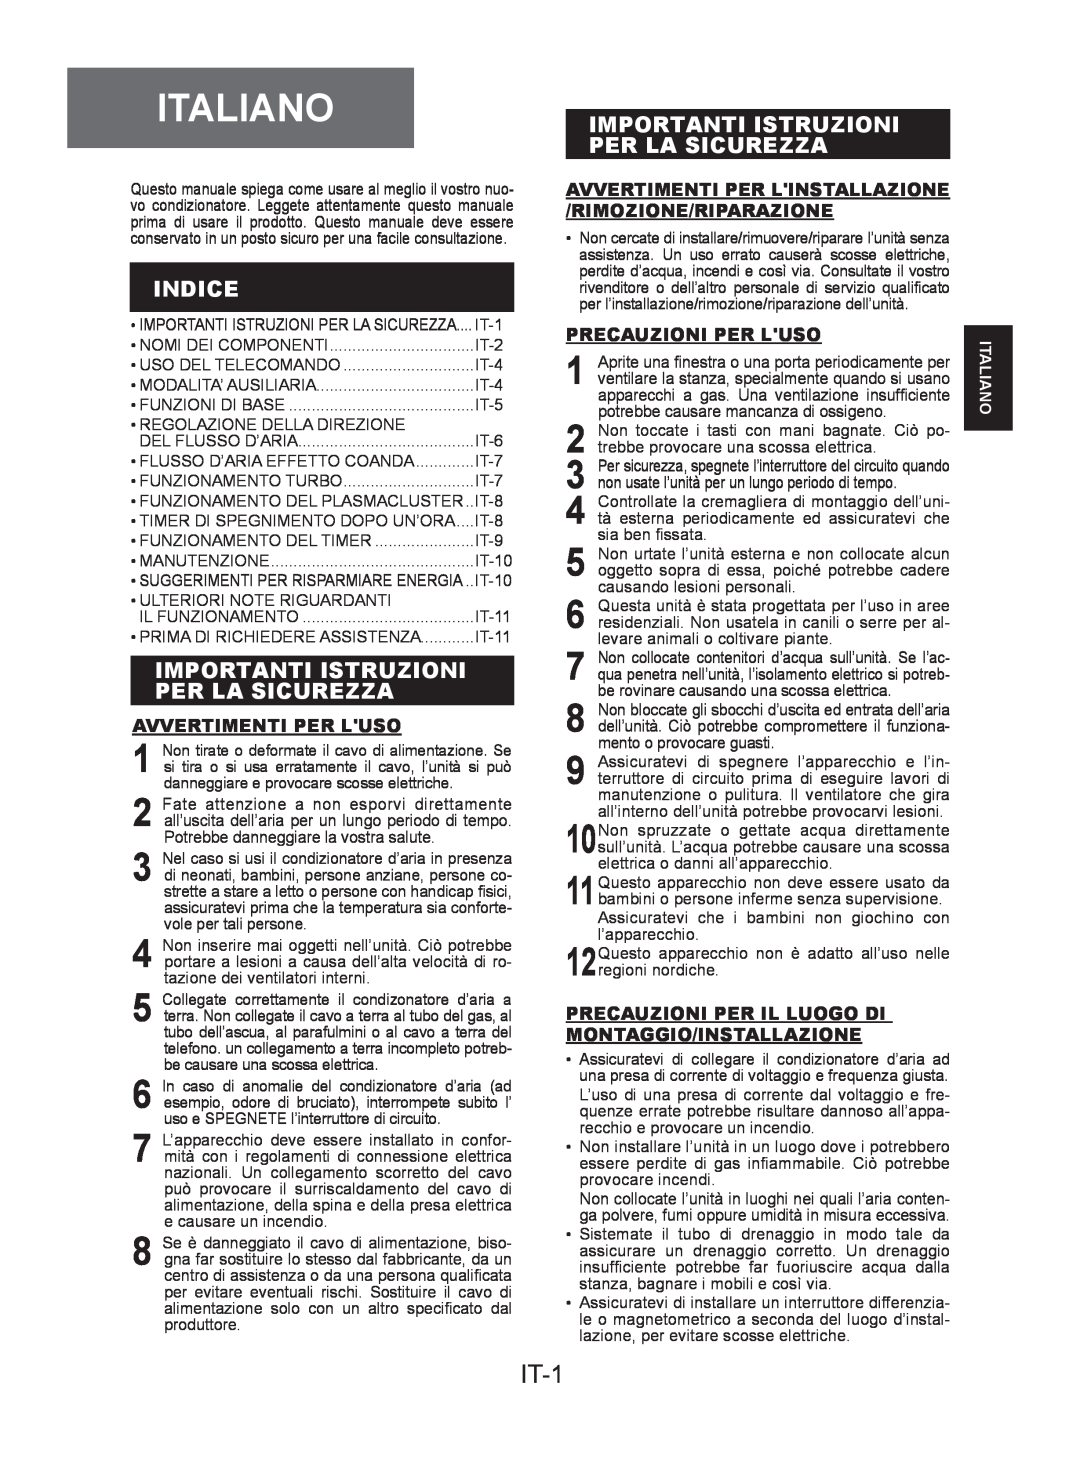 Sharp AE-A24KR Italiano, IT-1, Indice, Importanti Istruzioni Per La Sicurezza, Avvertimenti Per Luso, Precauzioni Per Luso 